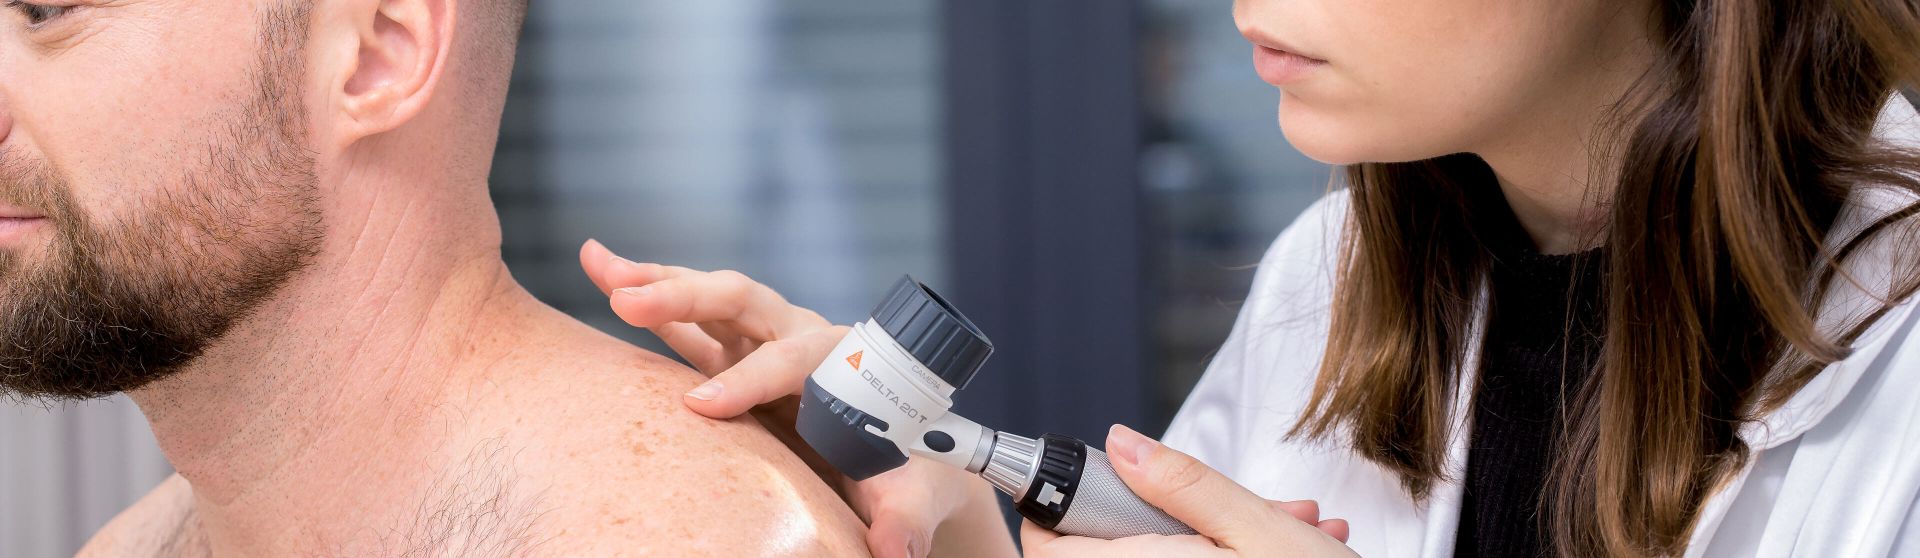 Dermatologin untersucht mit einem Dermatoskop die Haut eines Patienten.